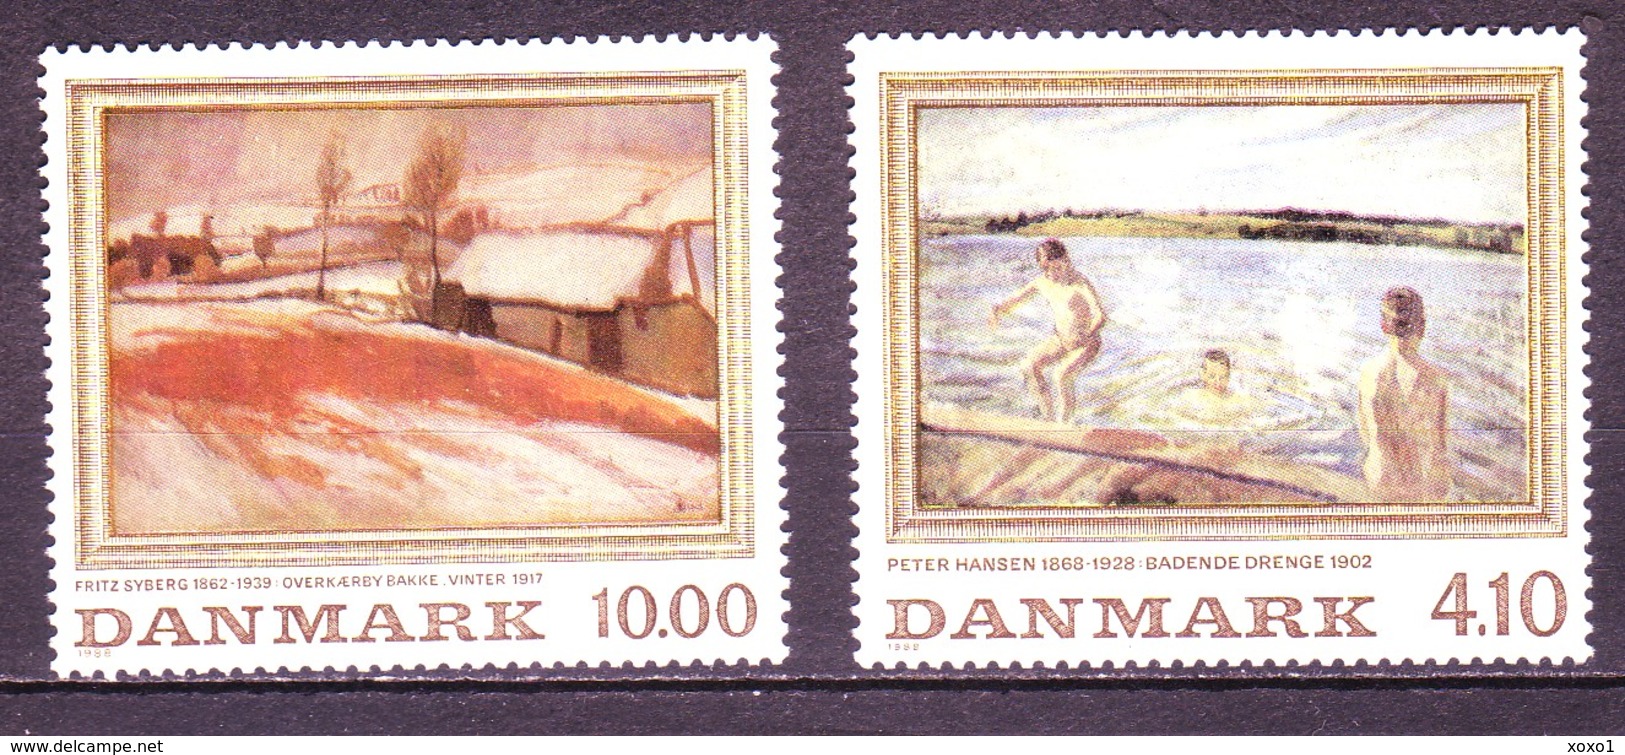 Denmark 1988 MiNr. 932 - 933  Dänemark Art Painting 2v MNH**  8,00 € - Nuovi